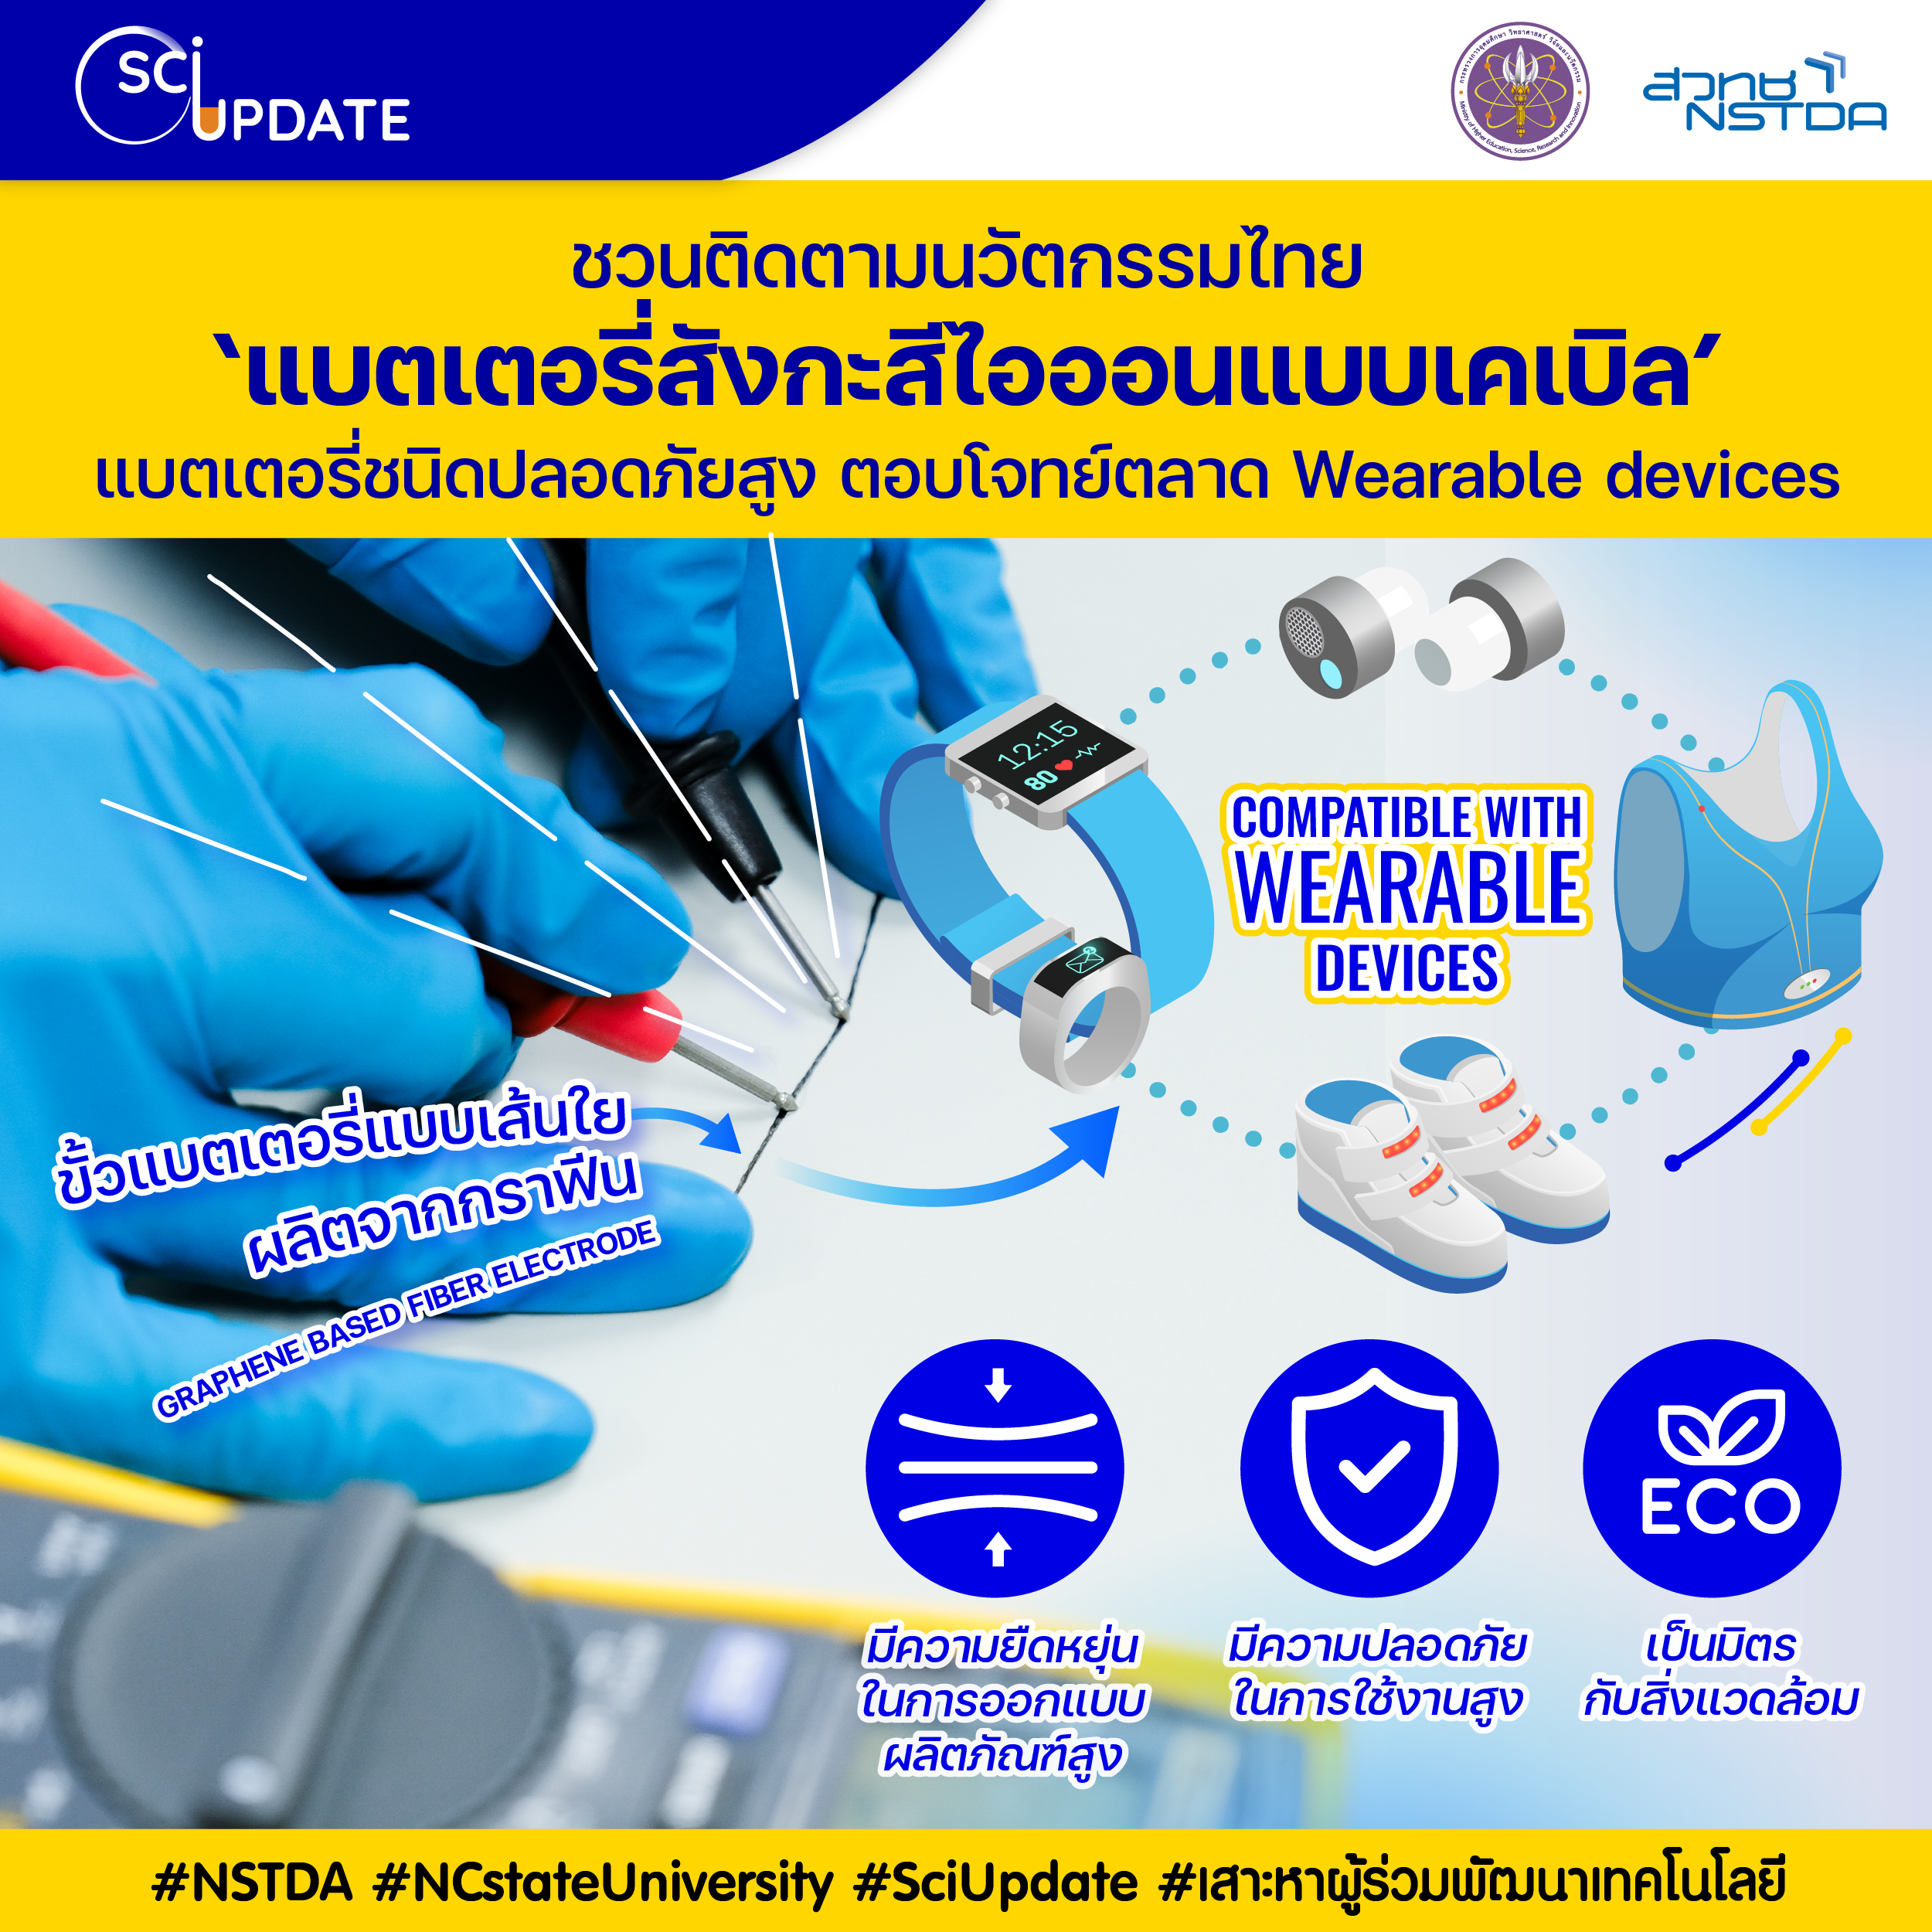 ชวนติดตามนวัตกรรมไทย ‘แบตเตอรี่สังกะสีไอออนแบบเคเบิล’ แบตเตอรี่ชนิดปลอดภัยสูง ตอบโจทย์การแข่งขันในตลาด wearable devices